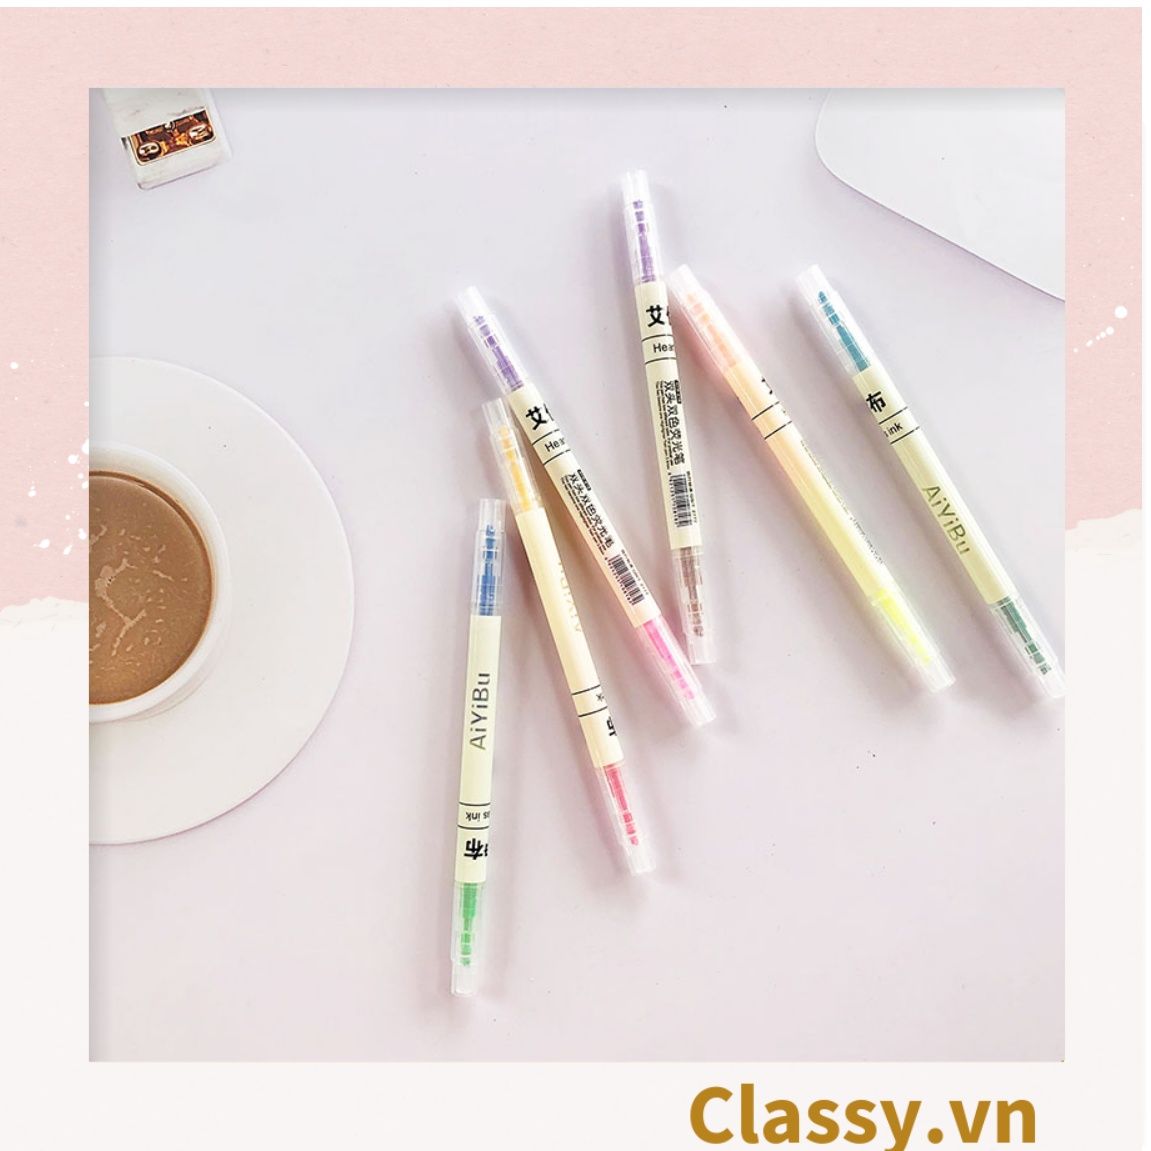  Bộ 6 màu Bút màu highlighter pastel, hỗ trợ học tập làm việc hiệu quả cho học sinh sinh viên nhân viên văn phòng PK1718 